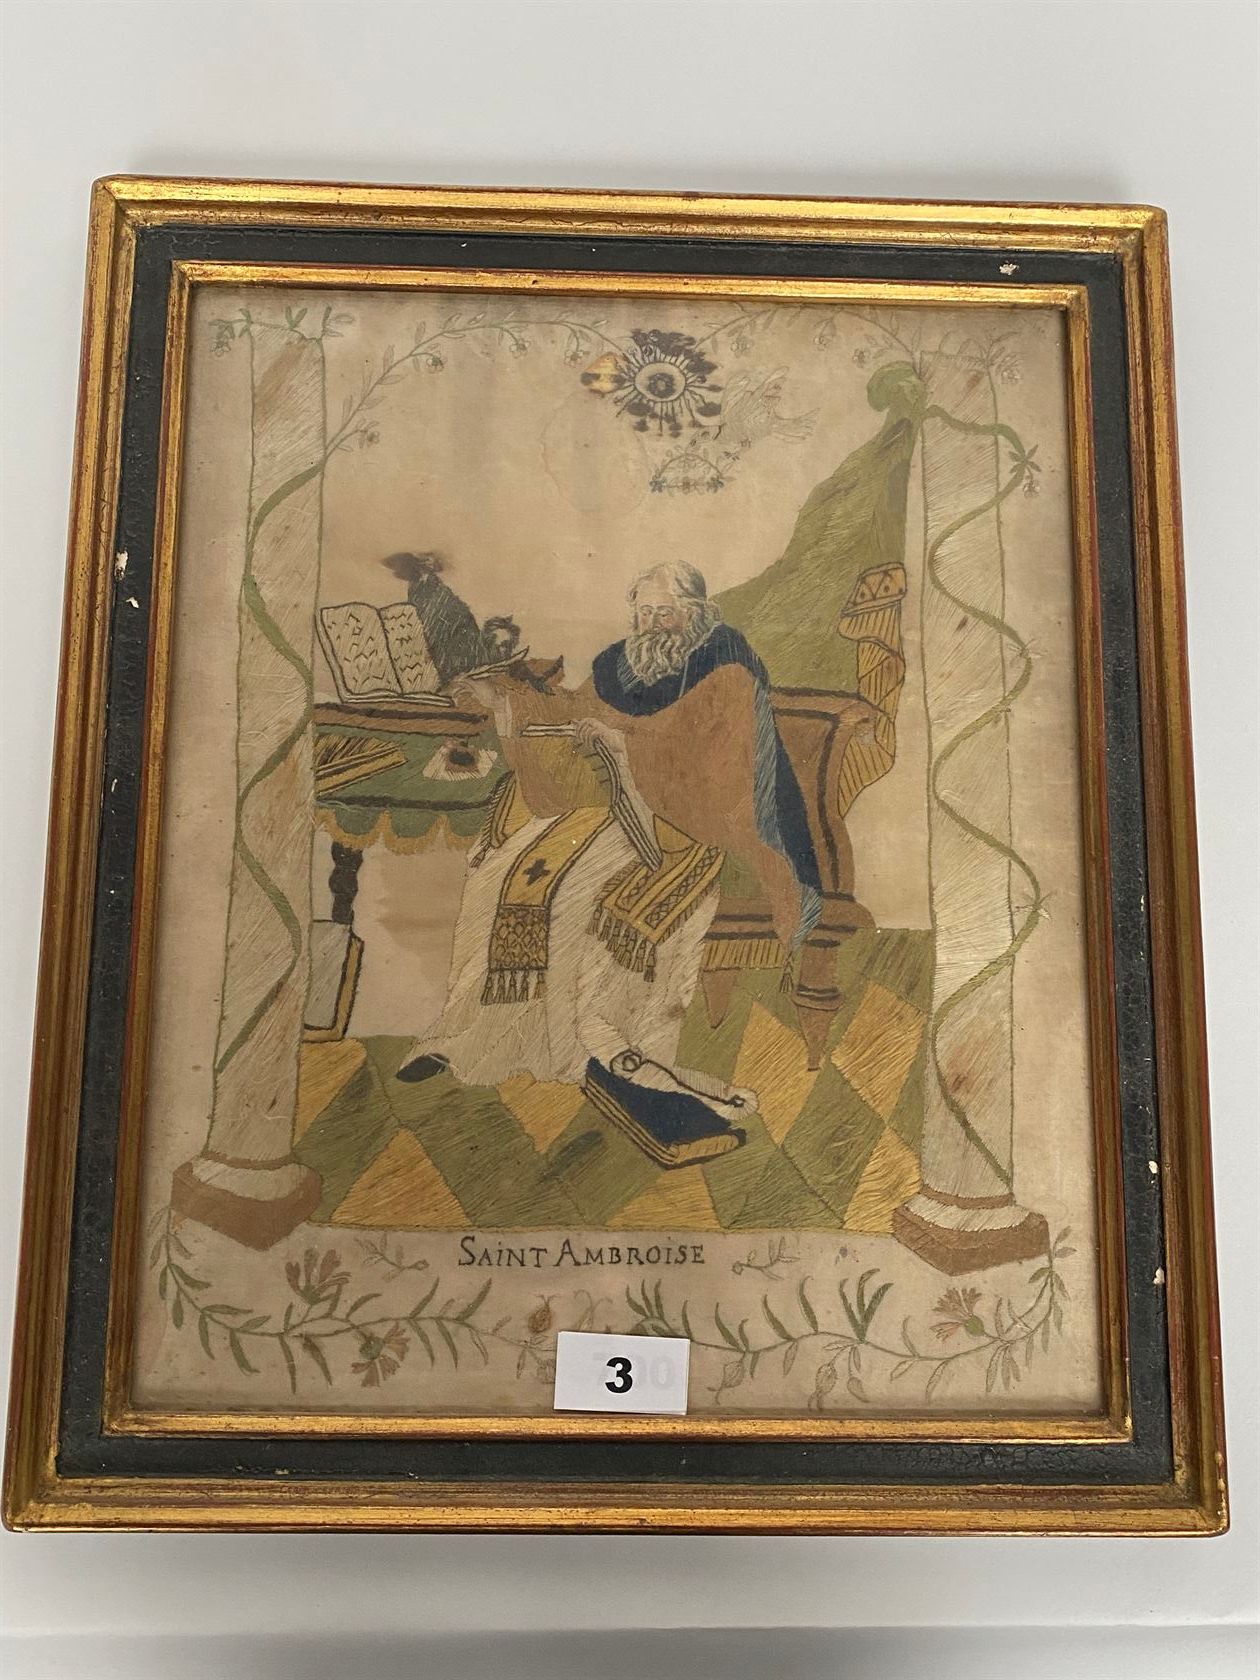 Null 彩色丝绸刺绣，表现圣安布罗斯在他的办公桌前，圣灵在他身上飞翔（小事故，污渍），装在一个框架中。十八世纪。尺寸为35 x 29厘米。